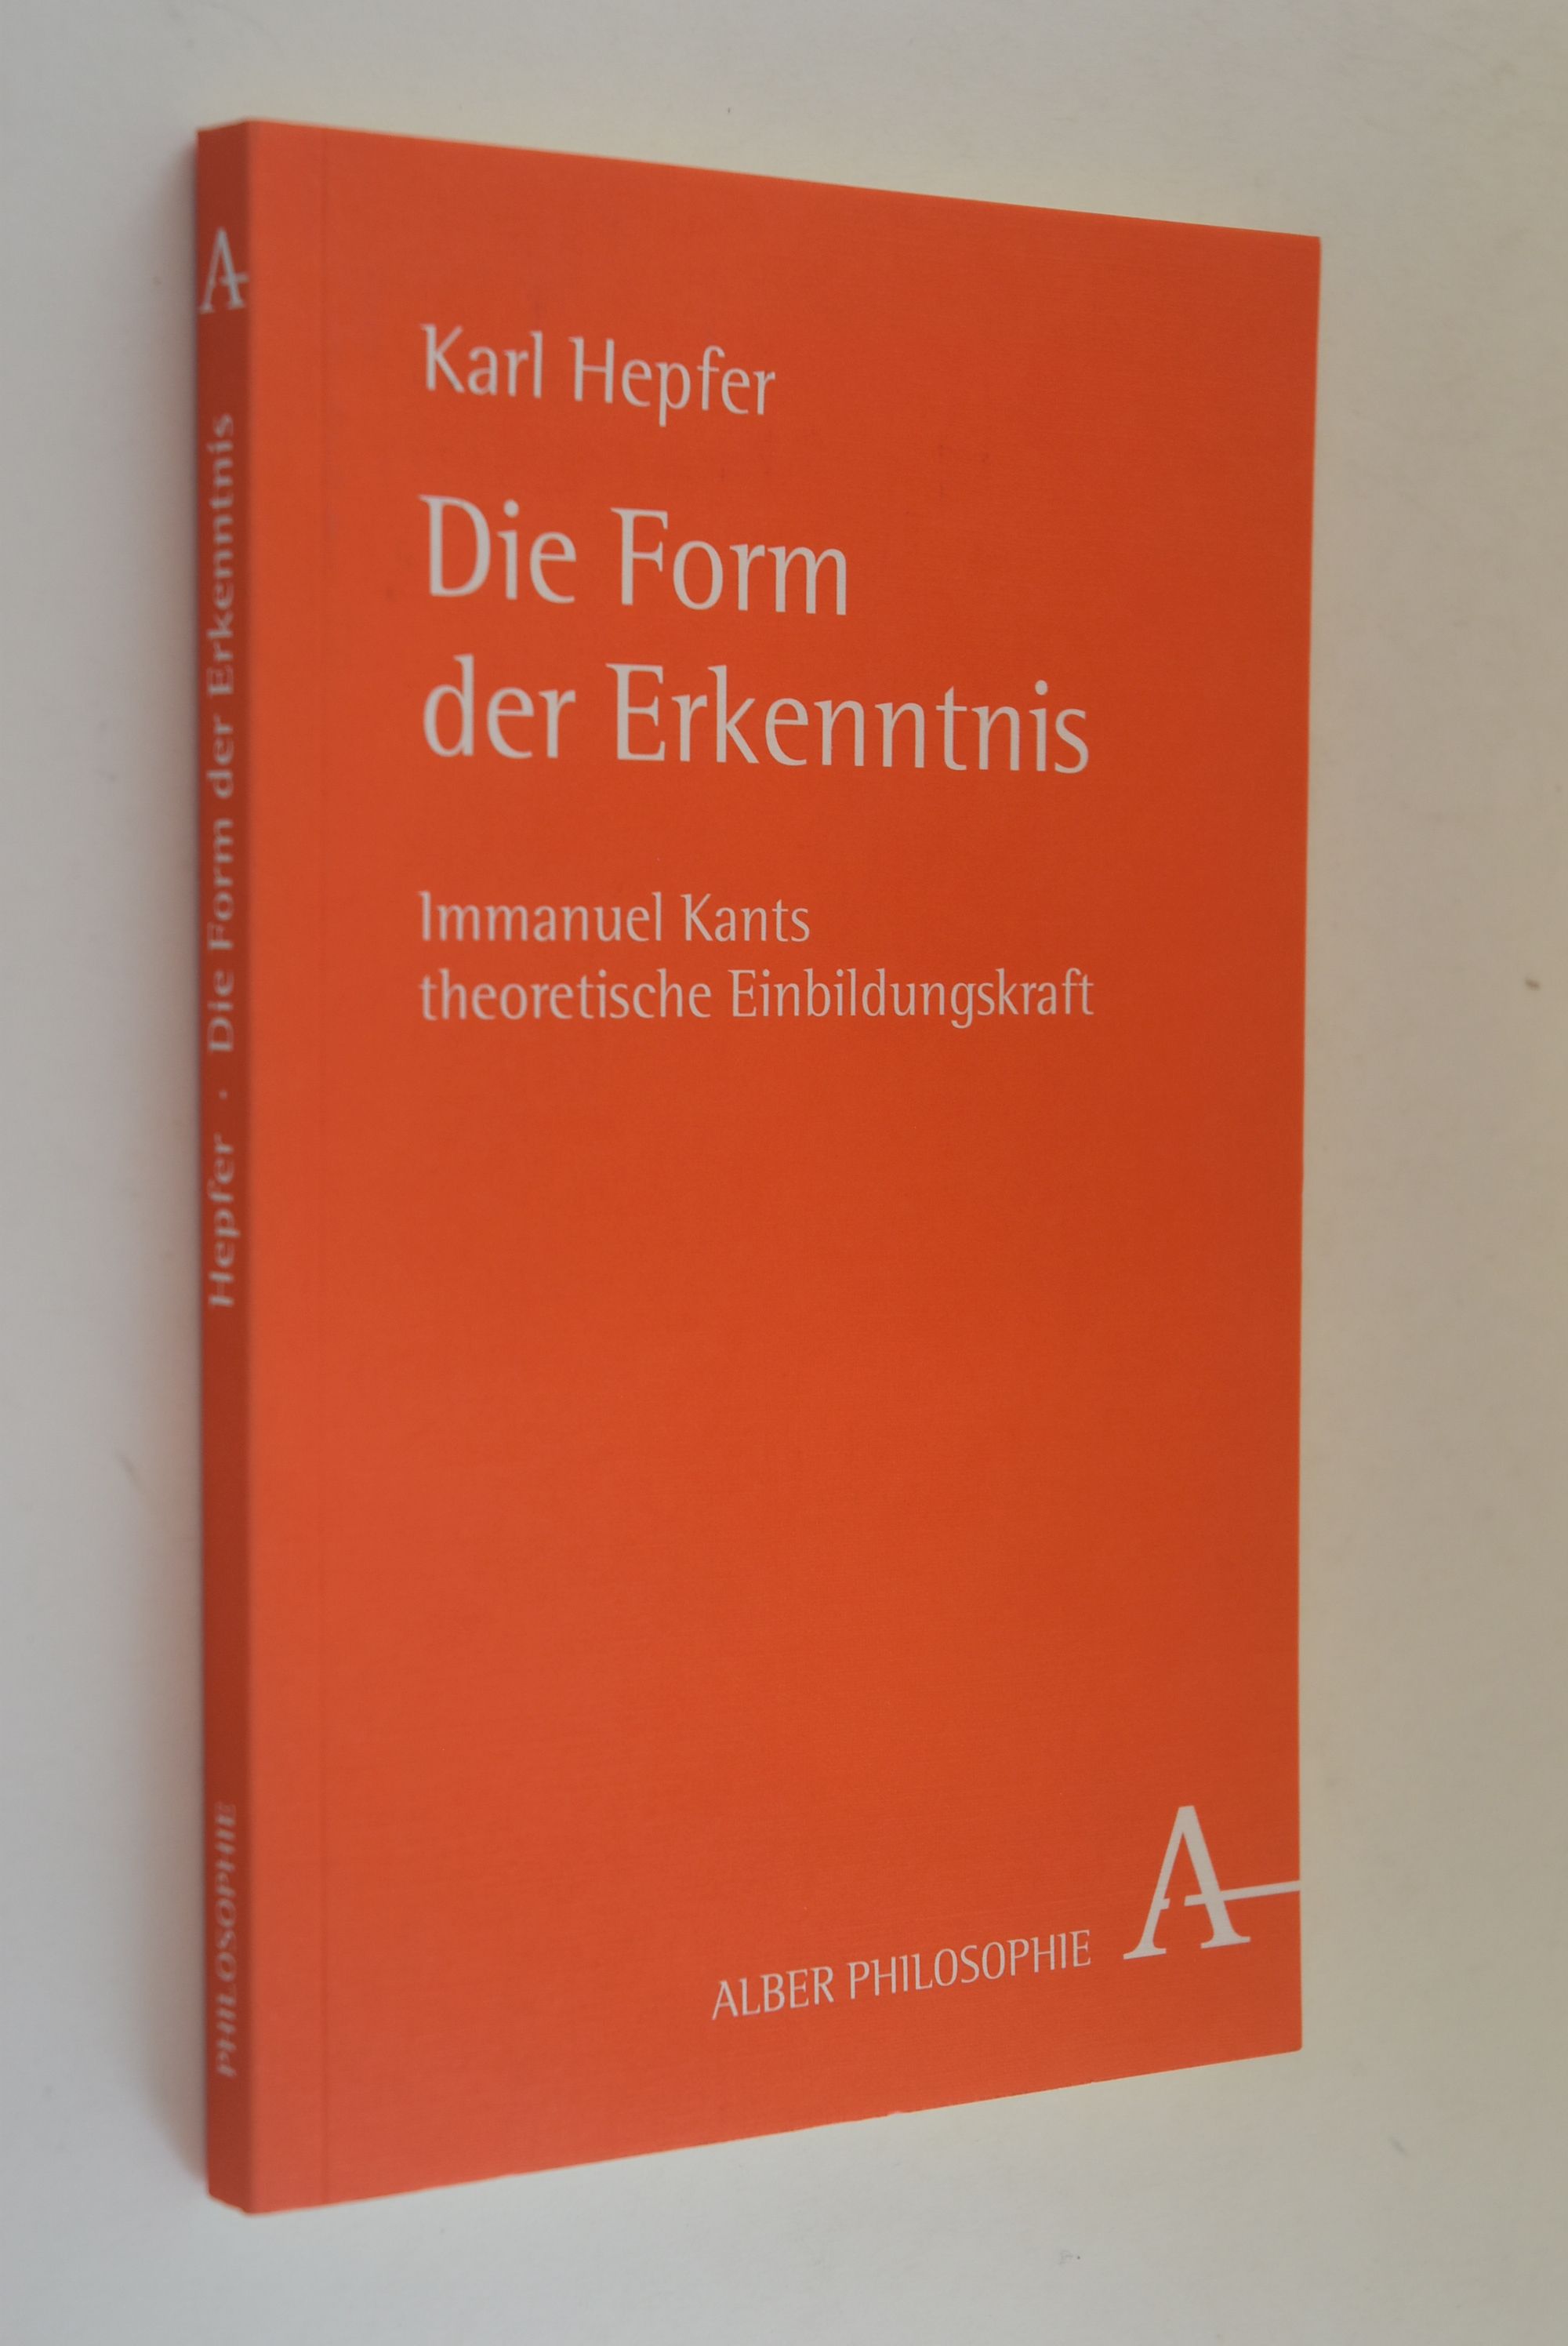 Die Form der Erkenntnis: Immanuel Kants theoretische Einbildungskraft. Alber Philosophie - Hepfer, Karl